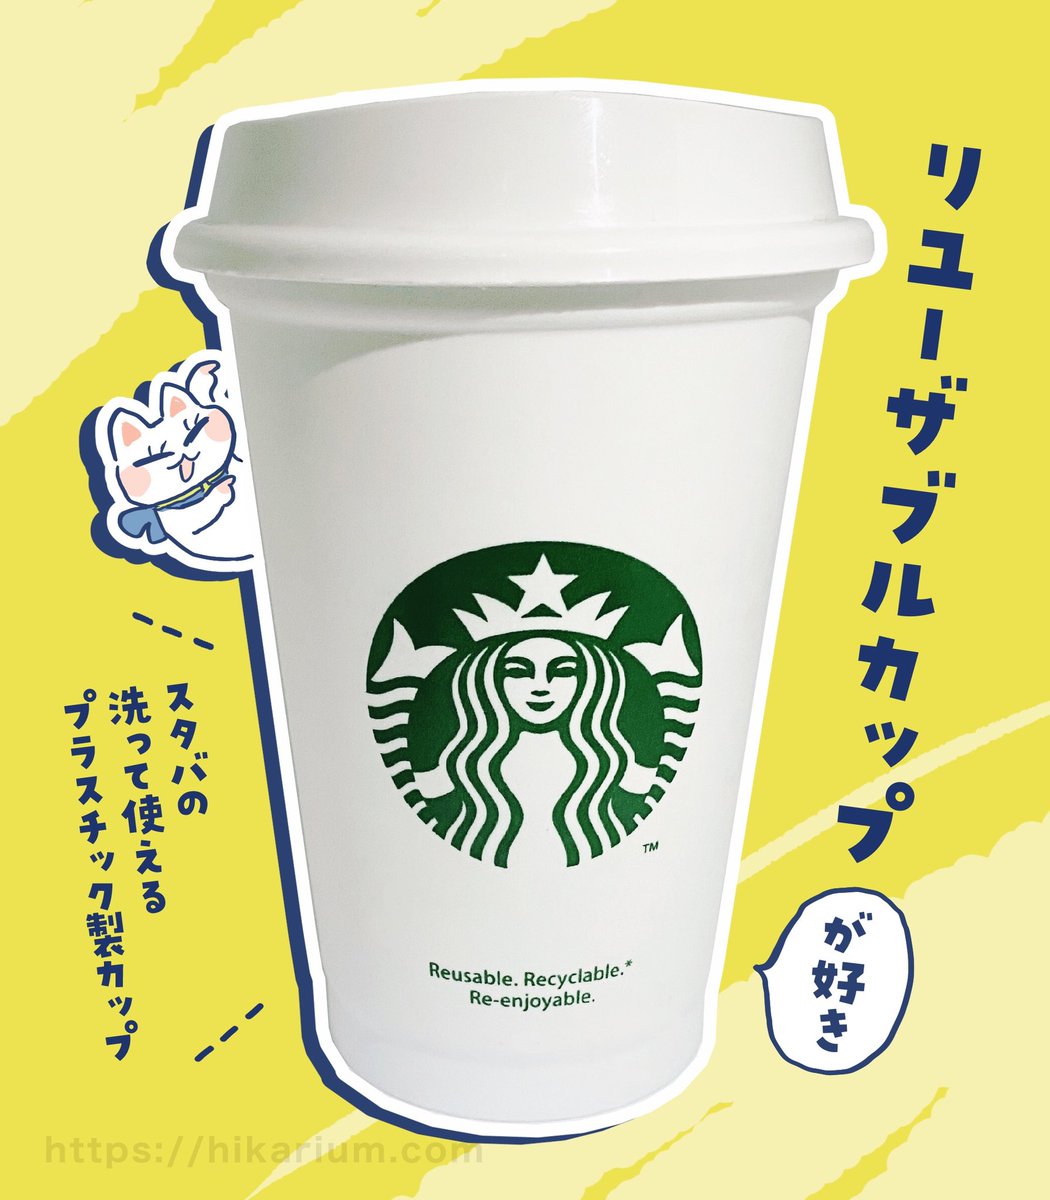 スタバの【 #リユーザブルカップ 】が最近のお気に入り。軽くて洗えるフタ付きプラスチック製カップです!
#スタバ #Starbucks 